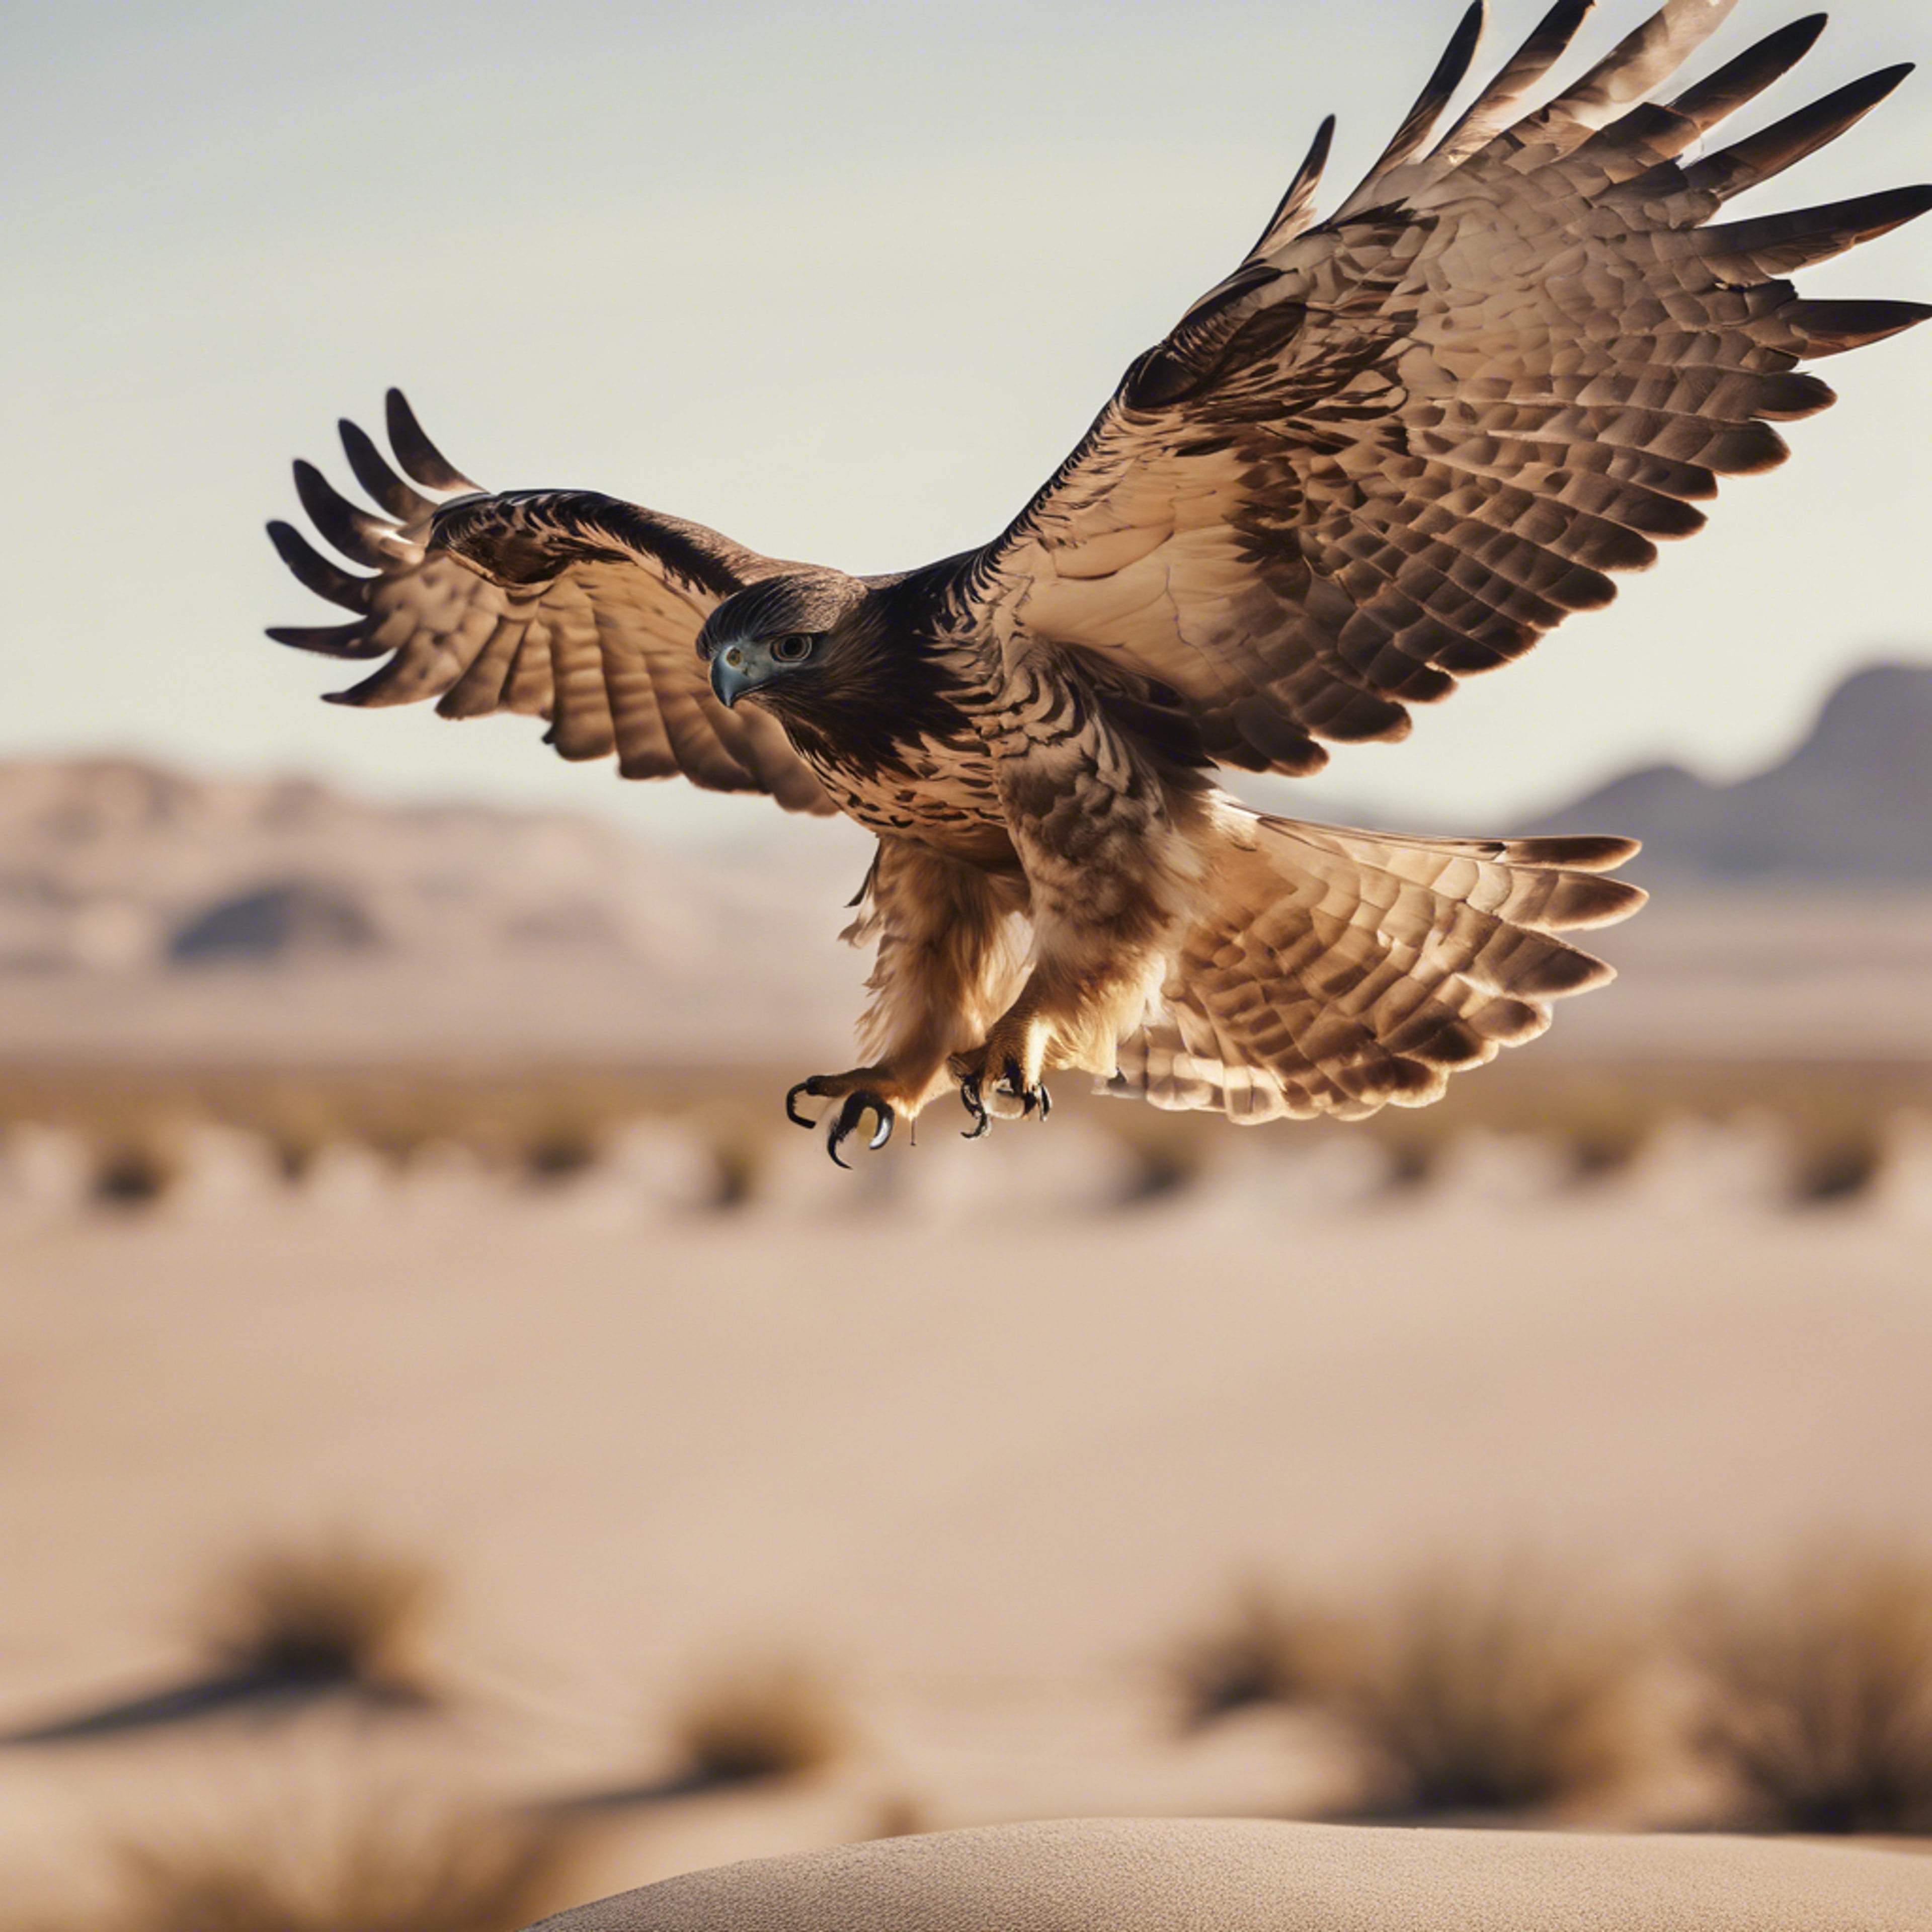 A hawk taking flight from its perch in a cool beige desert landscape. Papel de parede[f9770860966b45f09558]